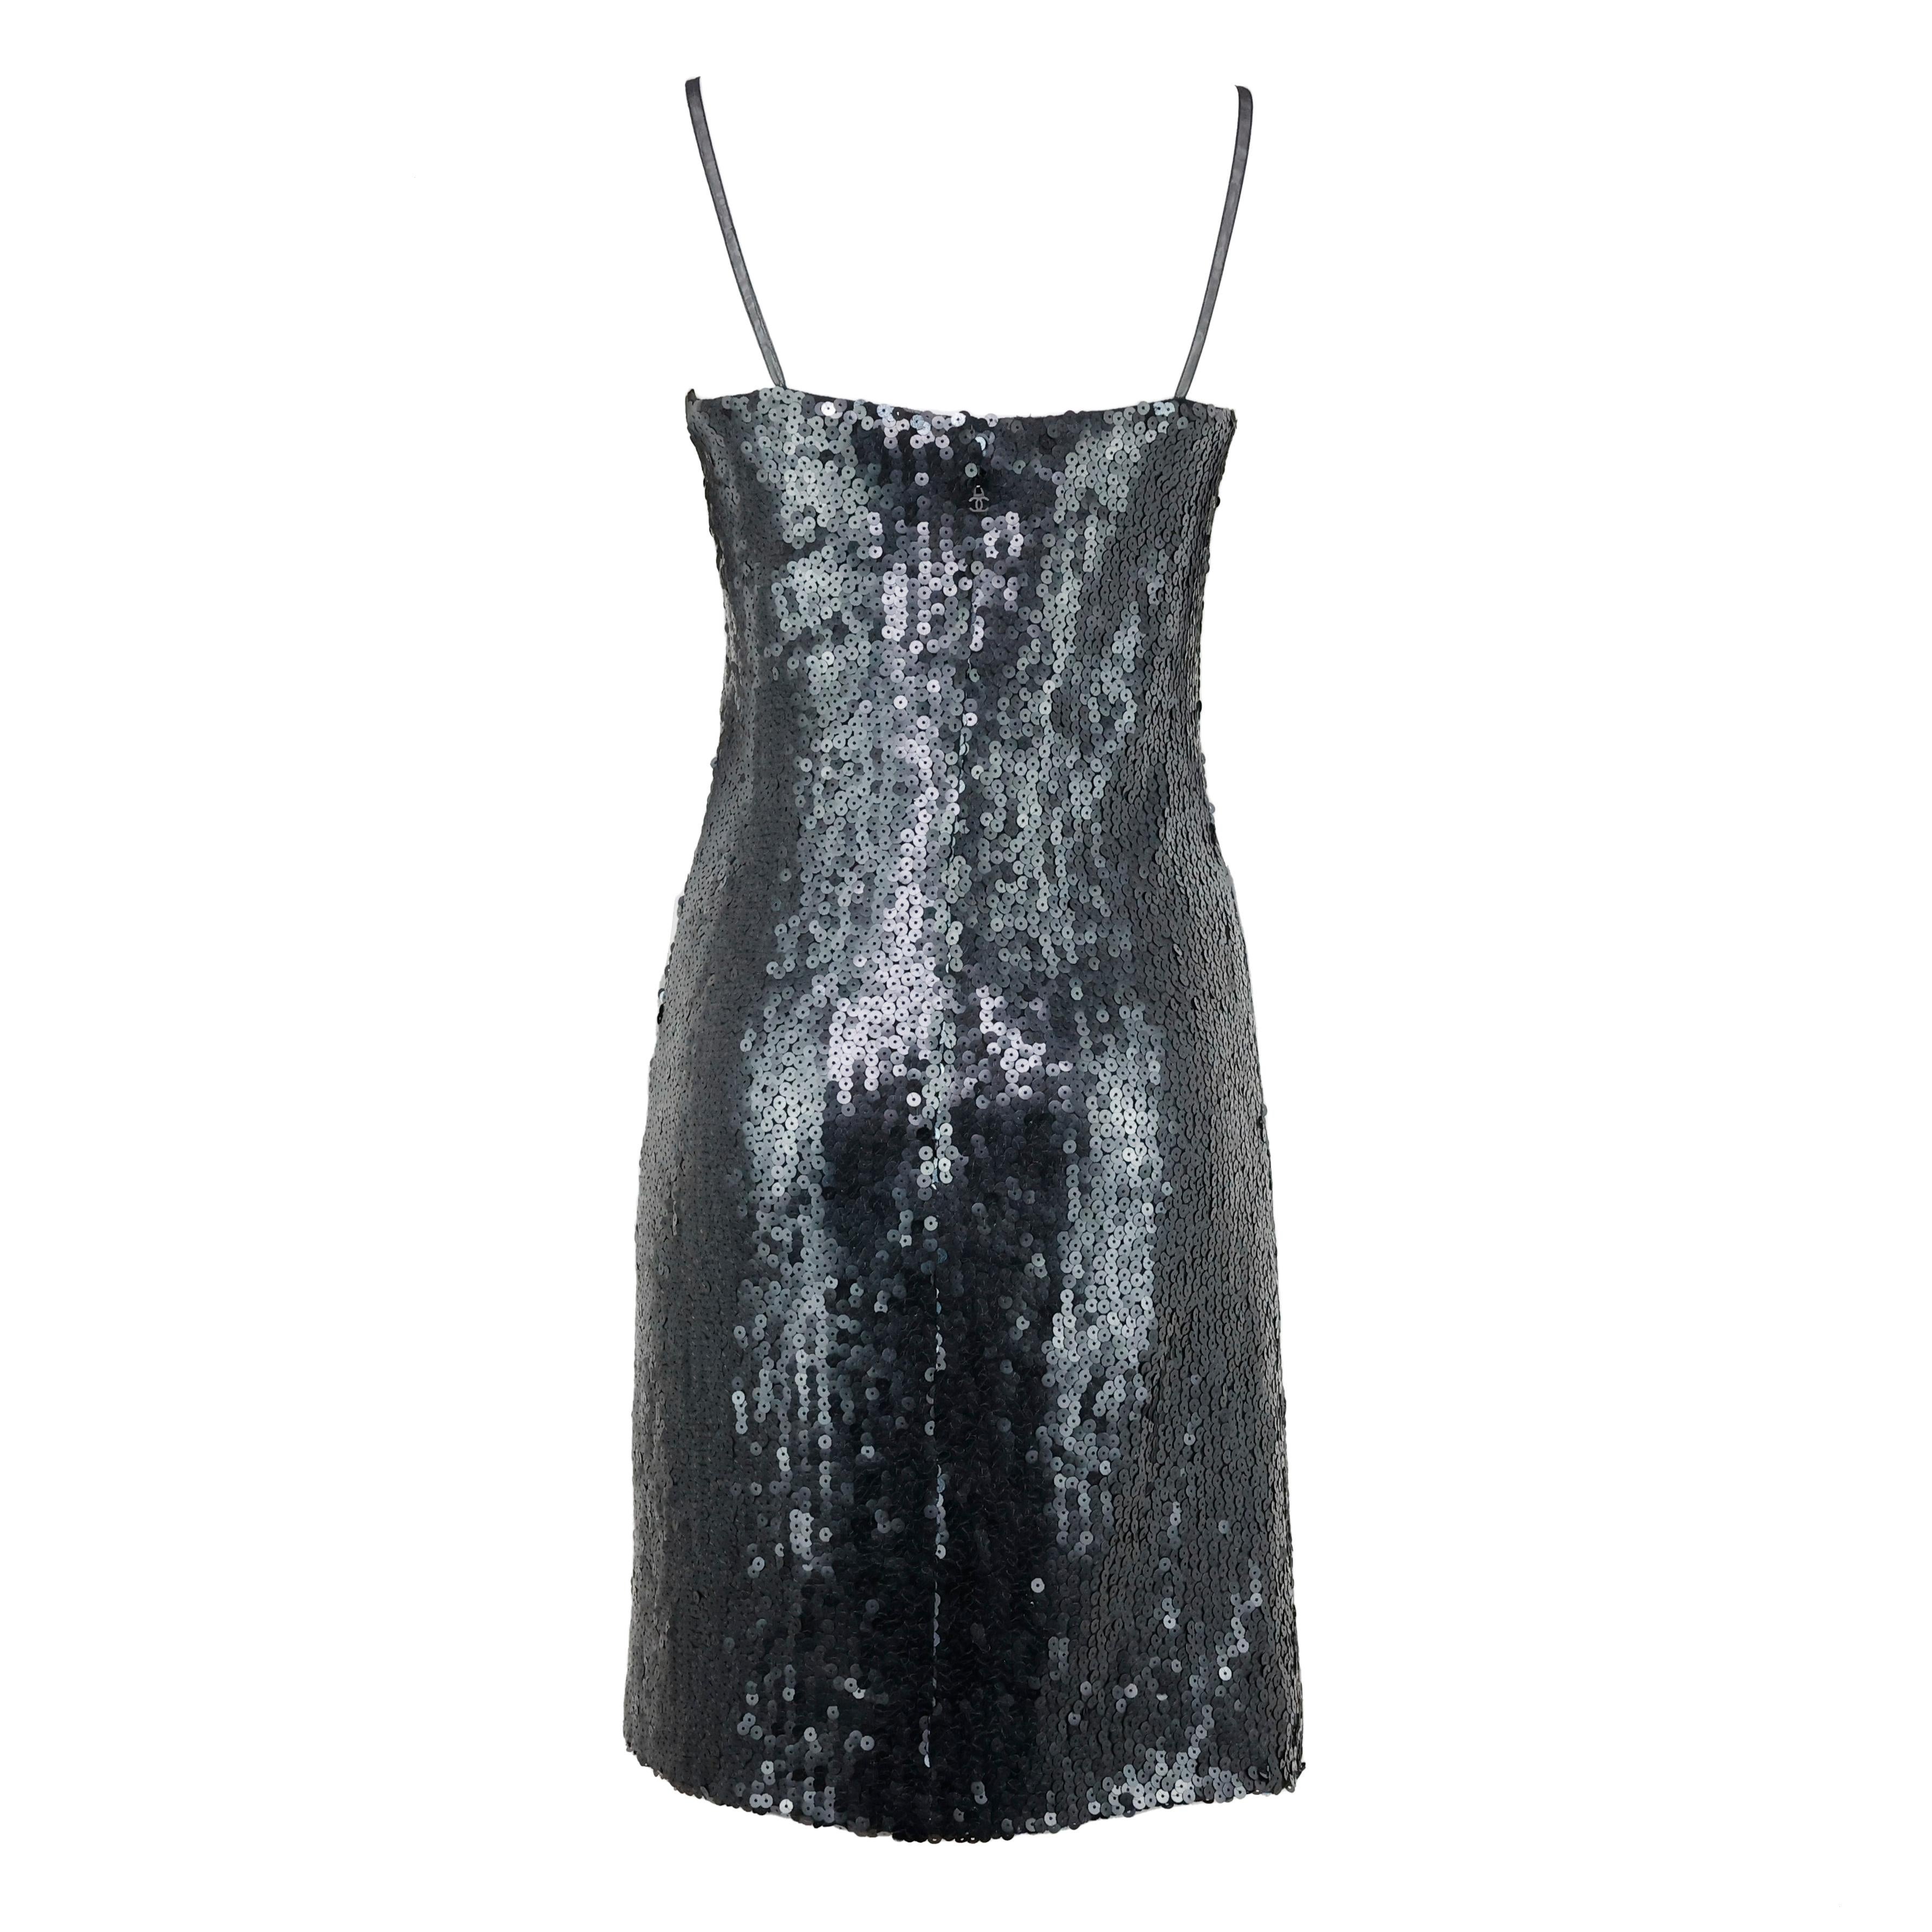 Chanel sequin mini dress color black, CC closure. Size 34 FR.

Condition:
Excellent.